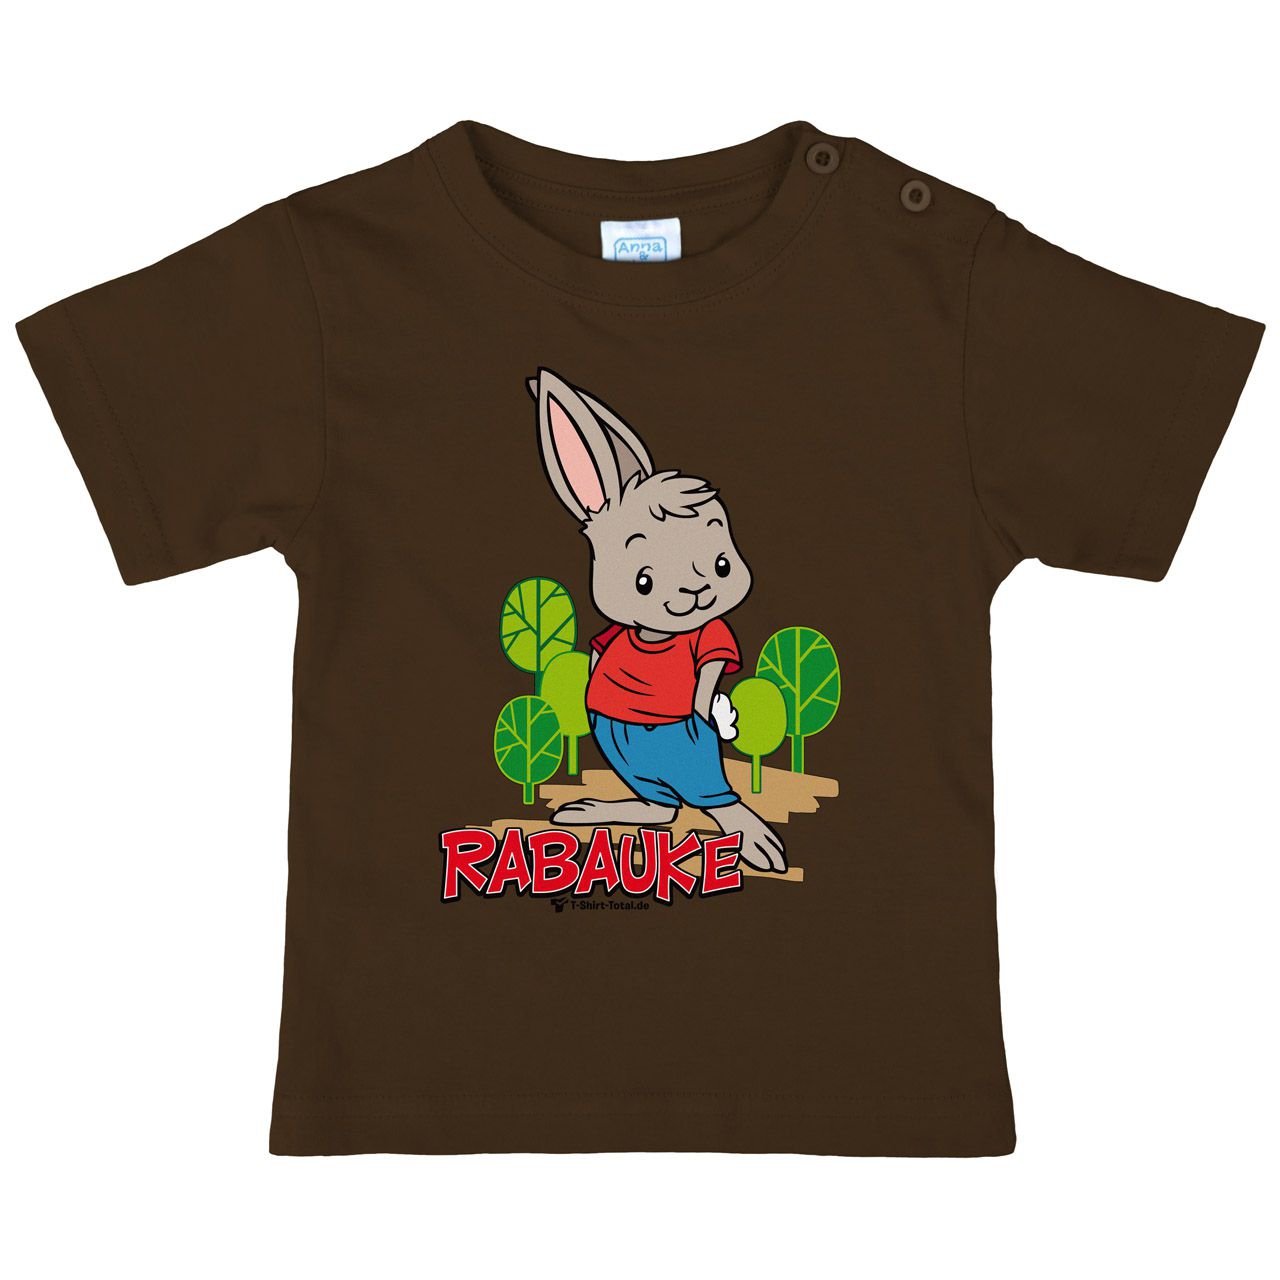 Rabauke Kinder T-Shirt braun 110 / 116